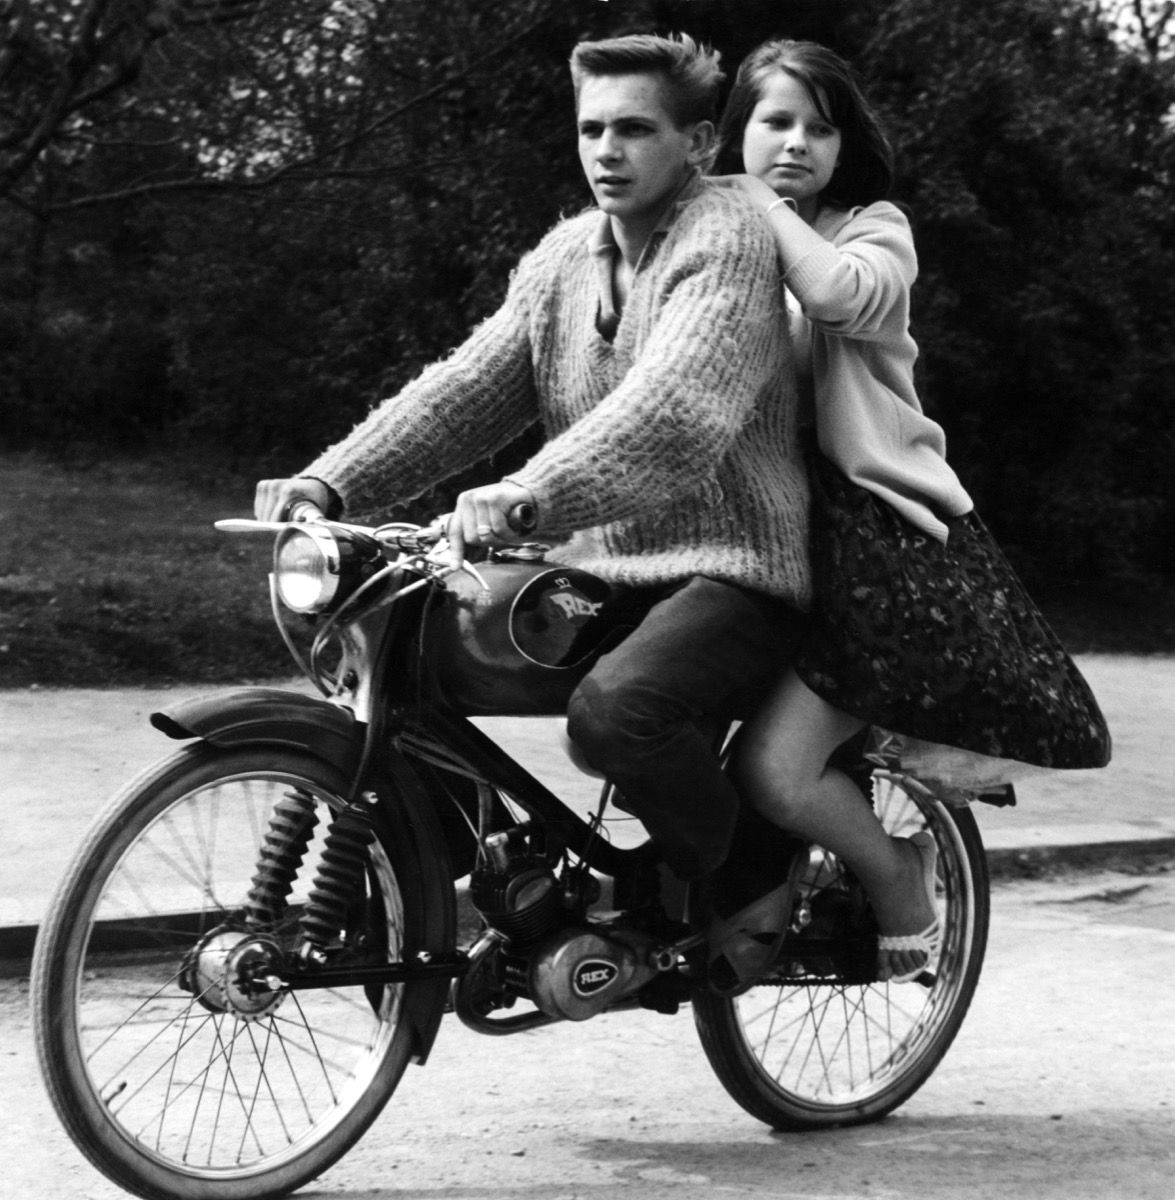 pareja joven en autocycle por Rex, 1950